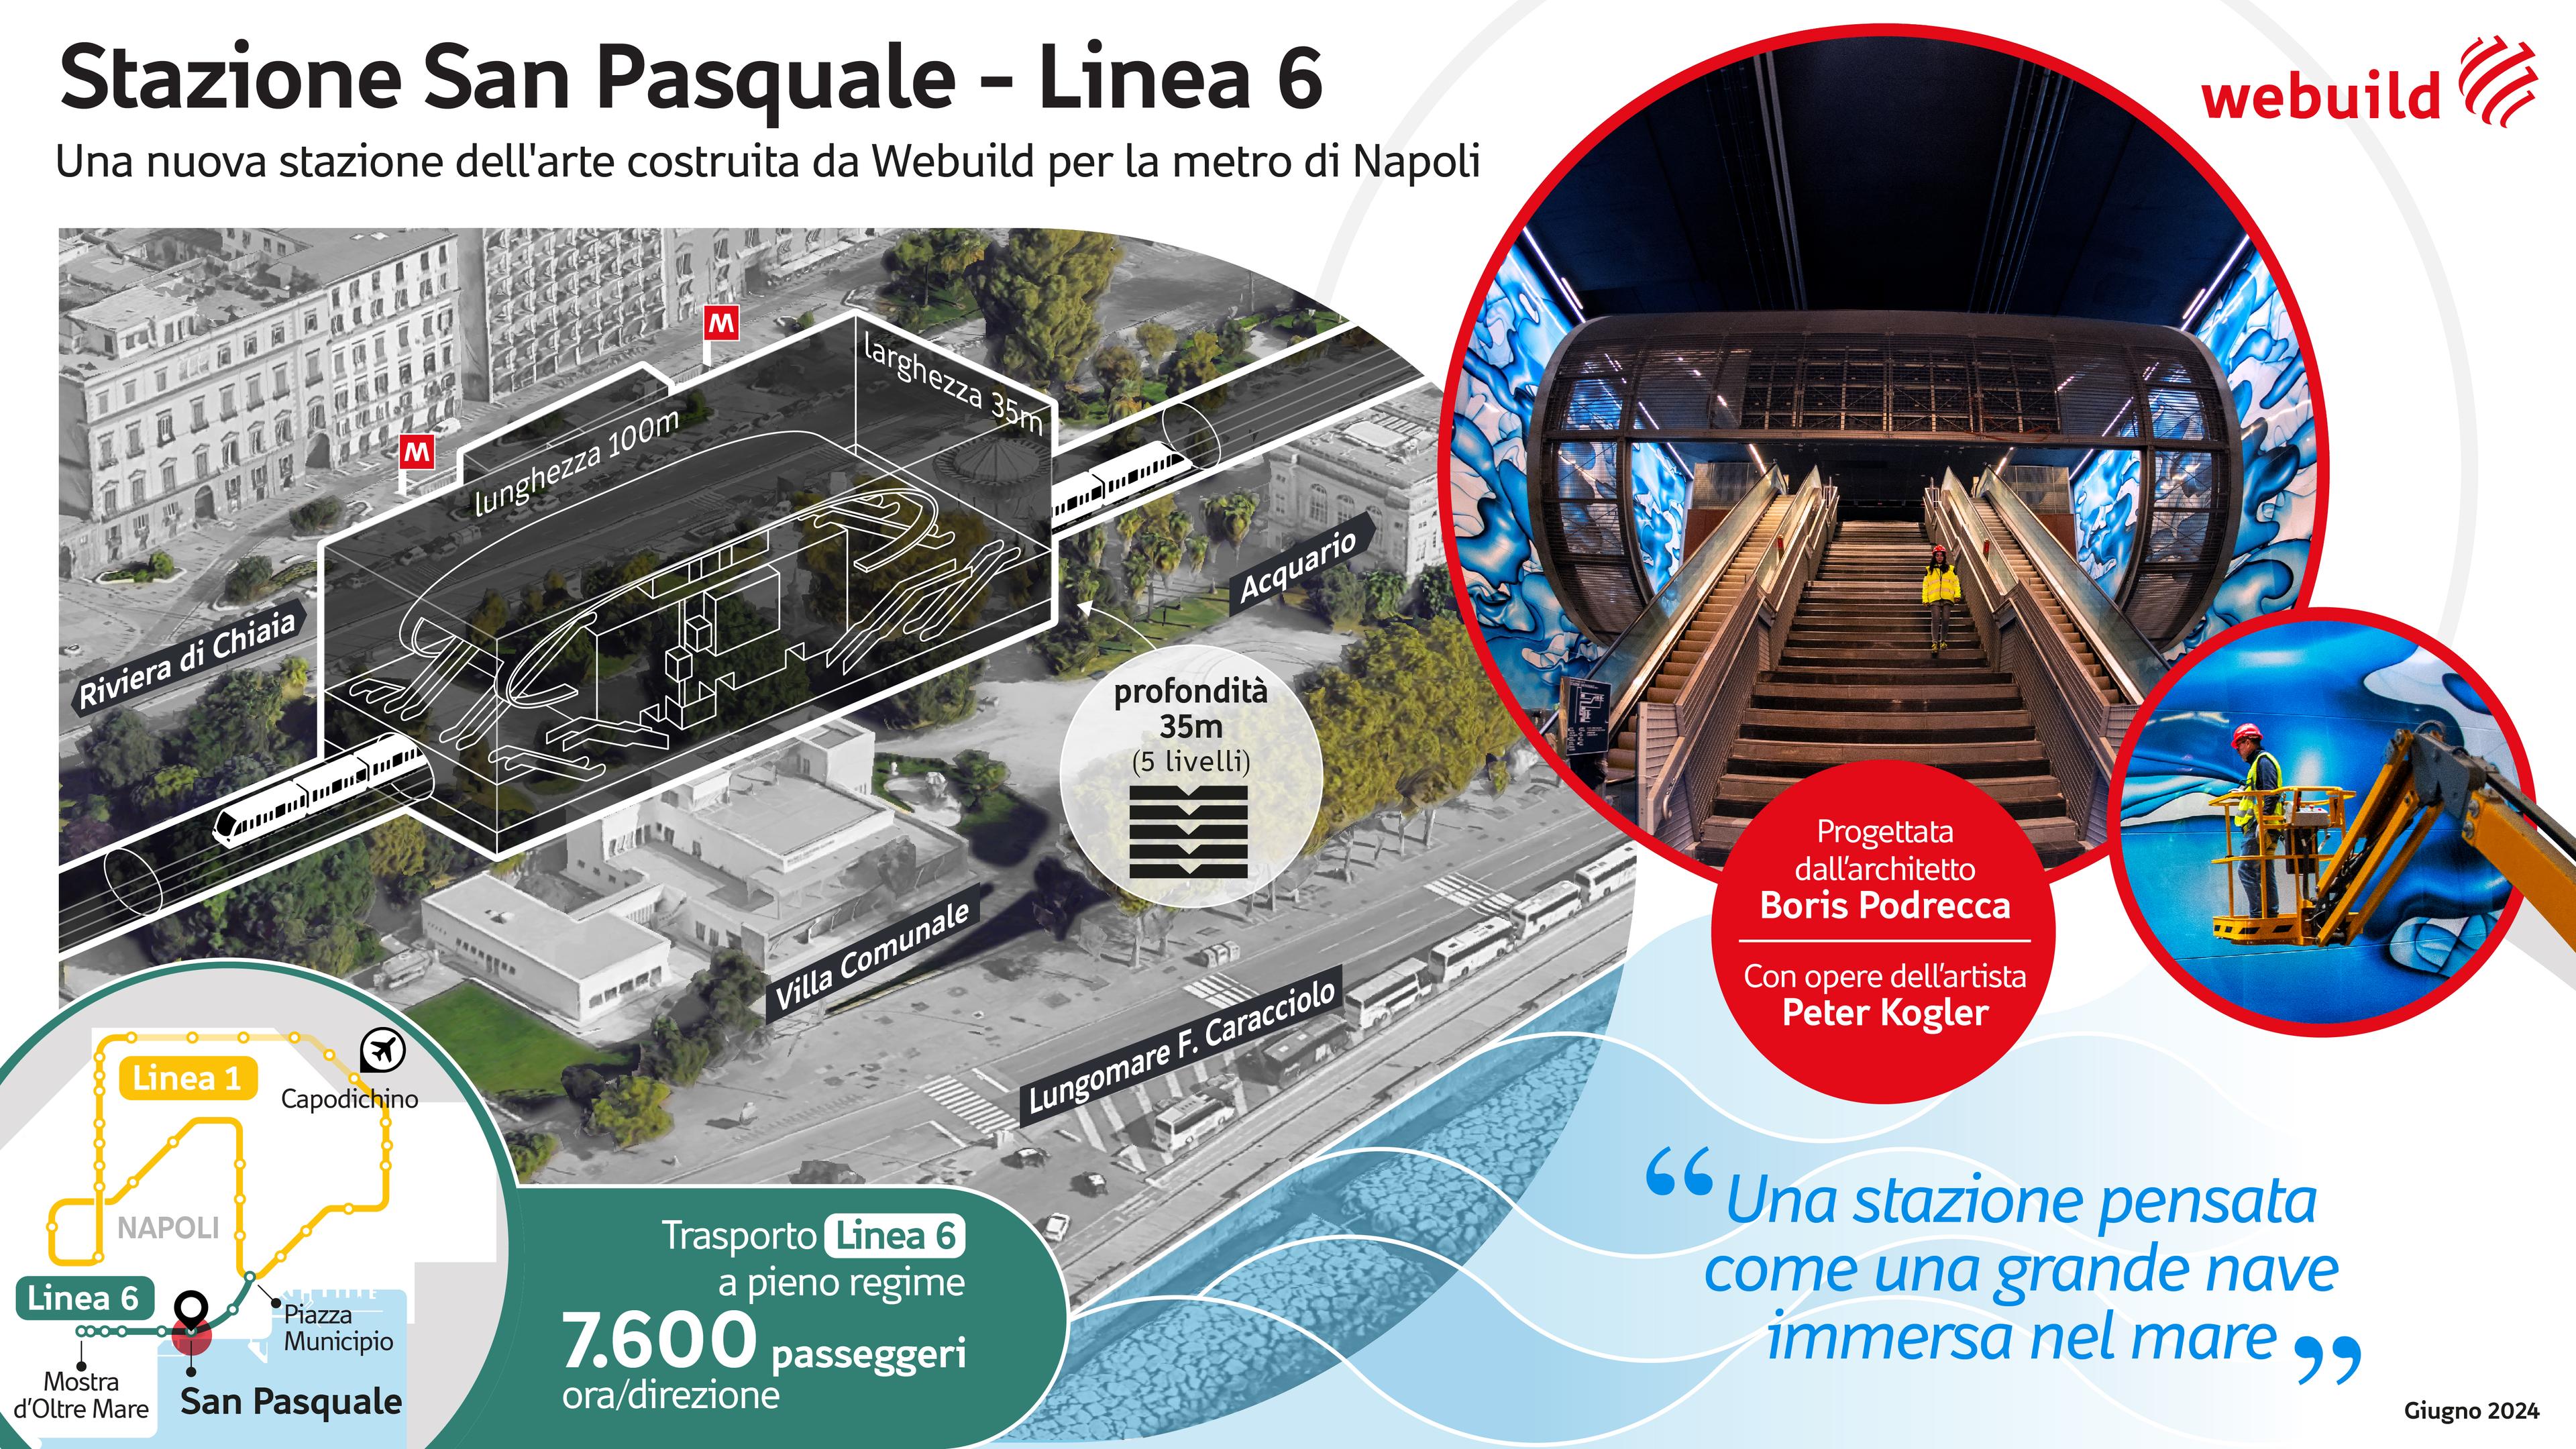 Stazione San Pasquale, Metropolitana di Napoli - Linea 6 | Webuild